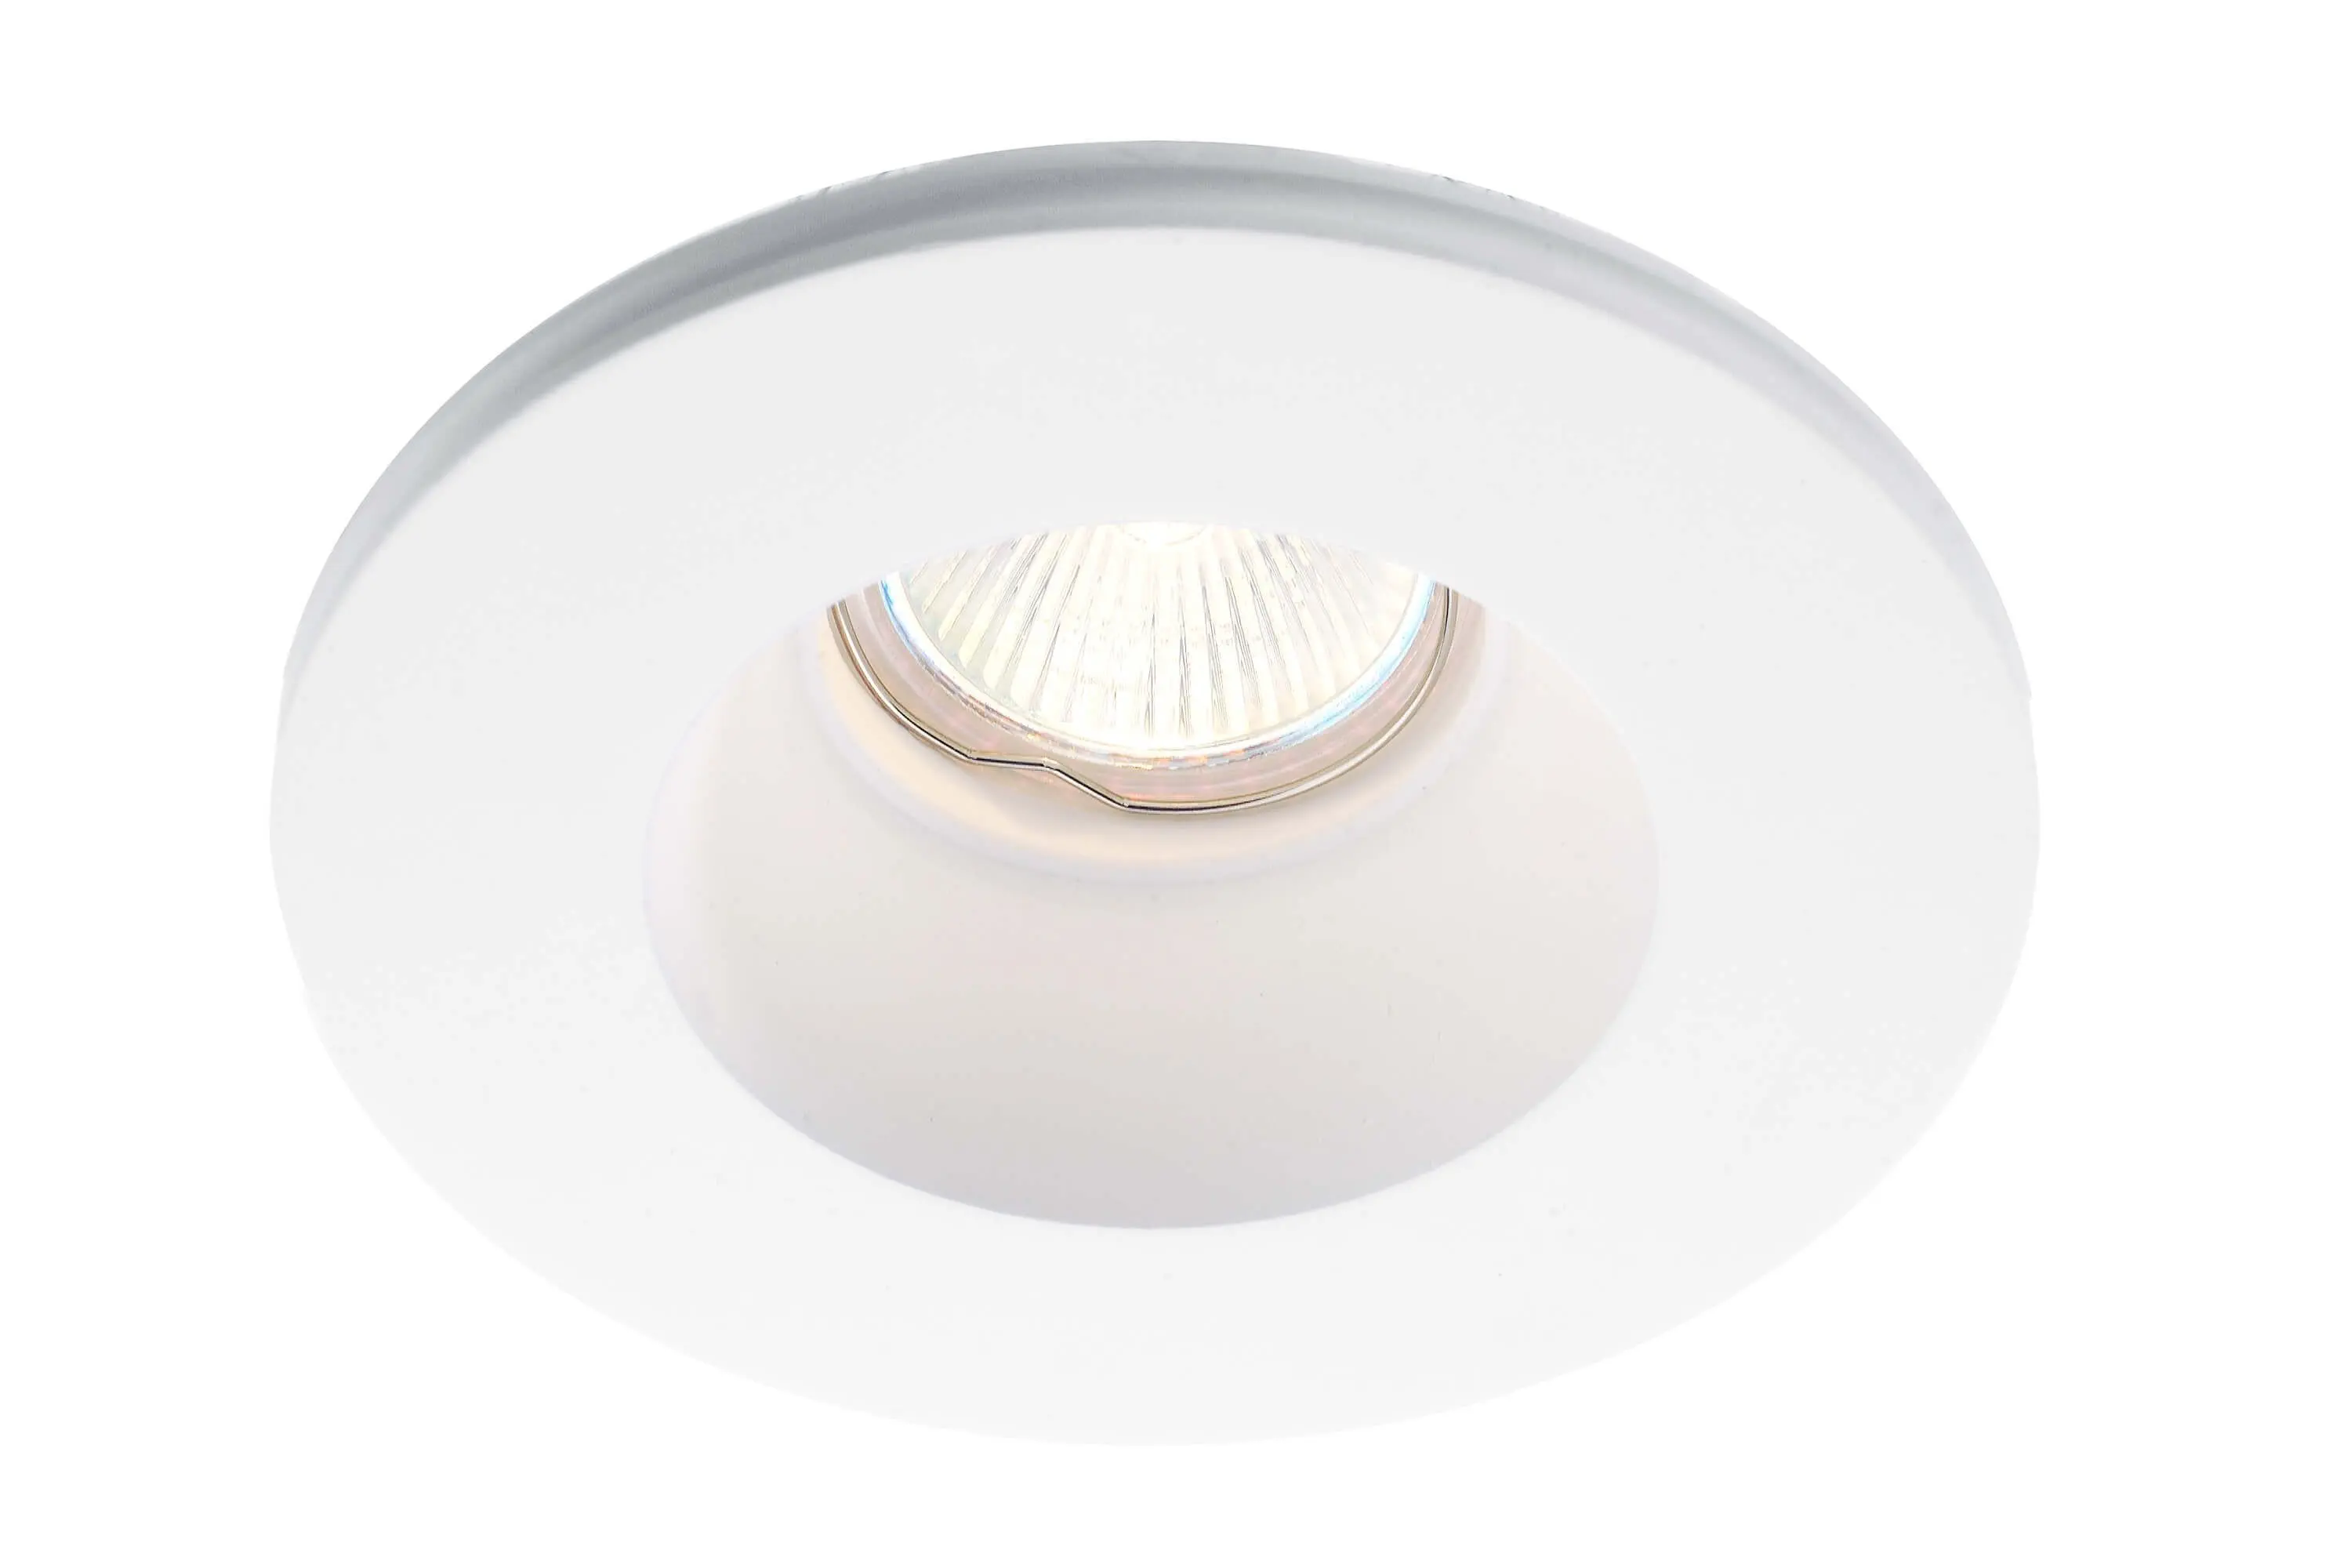 Einbaulampe Xeria aus Gips in weiß, rund, Ø13cm